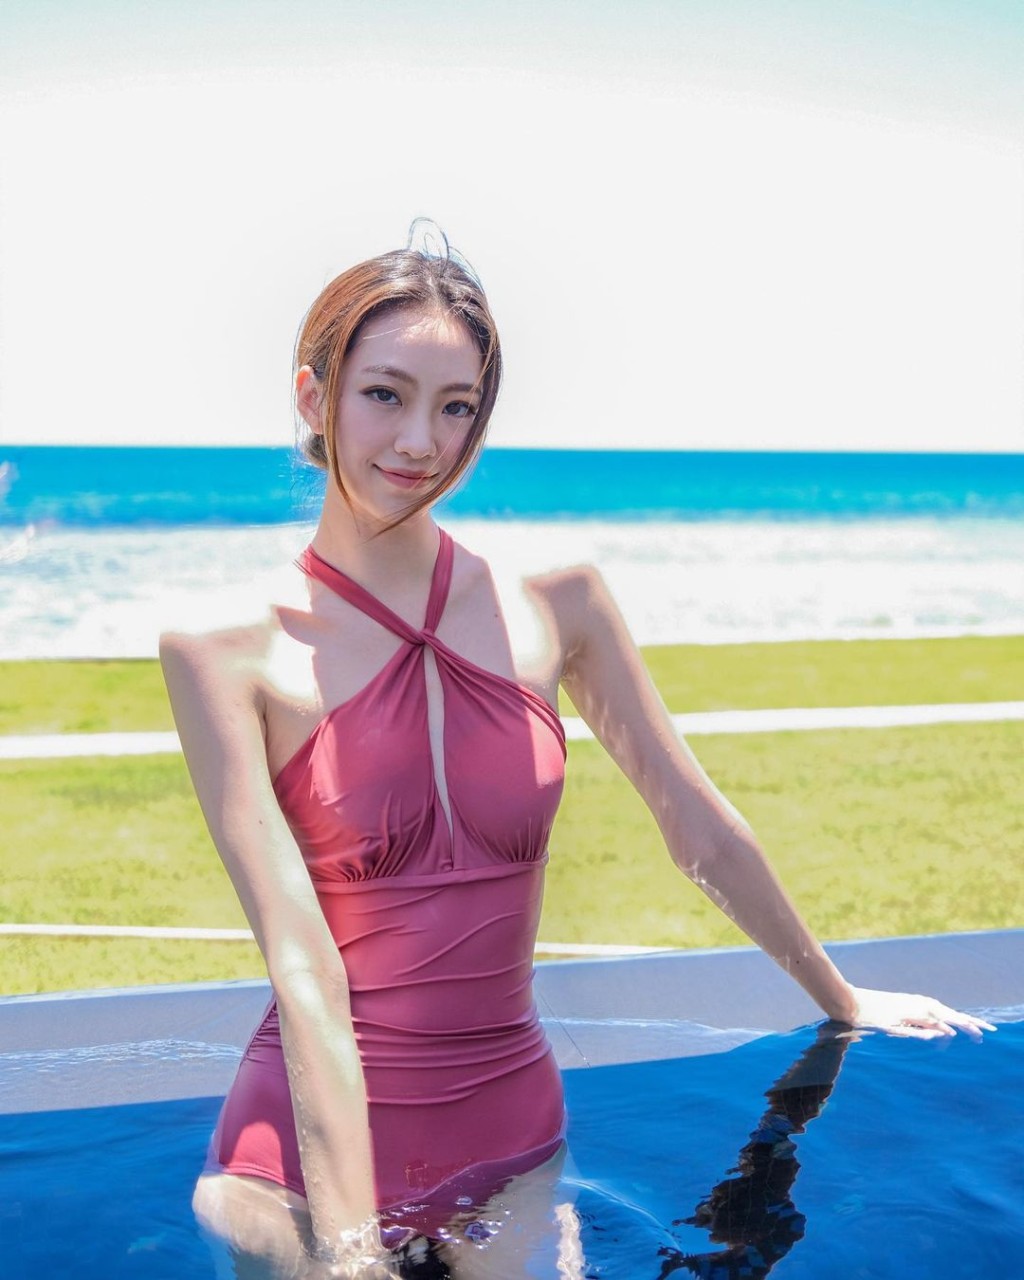 杨咏彤又分享了在泳池内回眸的照片。